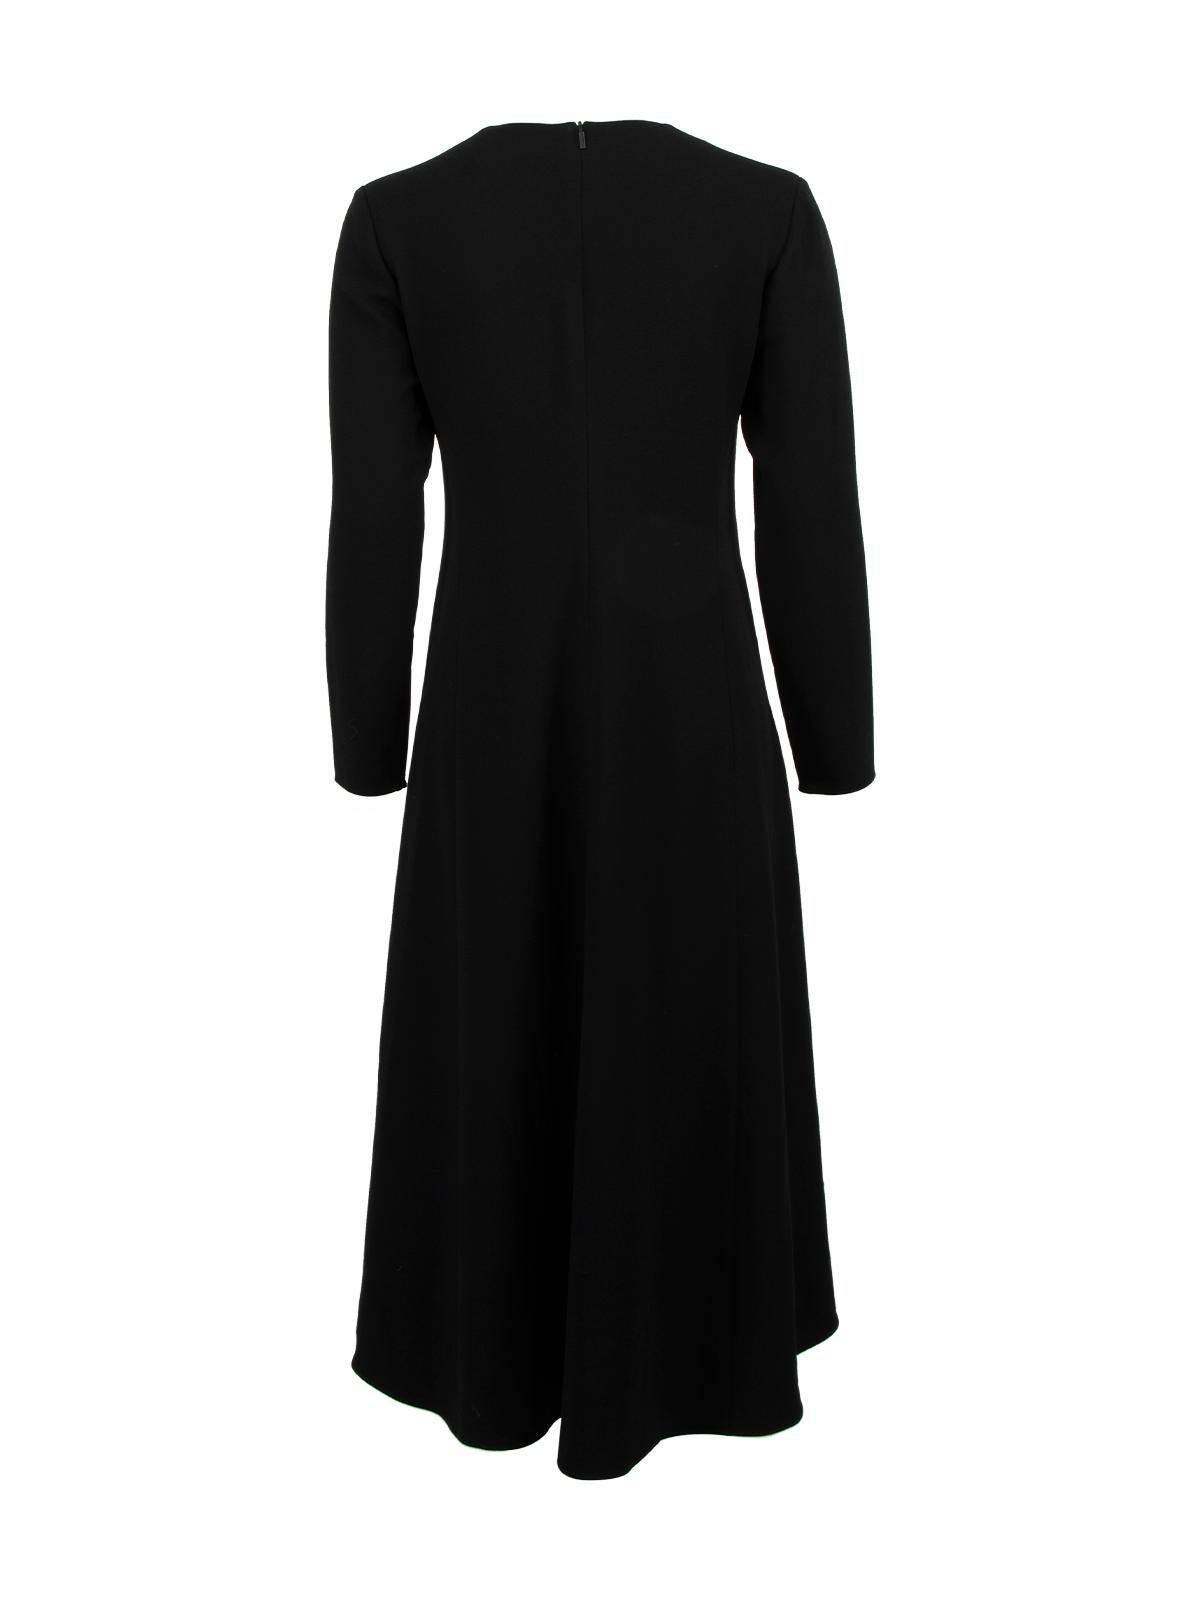 Black Pre-Loved Tibi Women's Long Sleeved Midi Dress